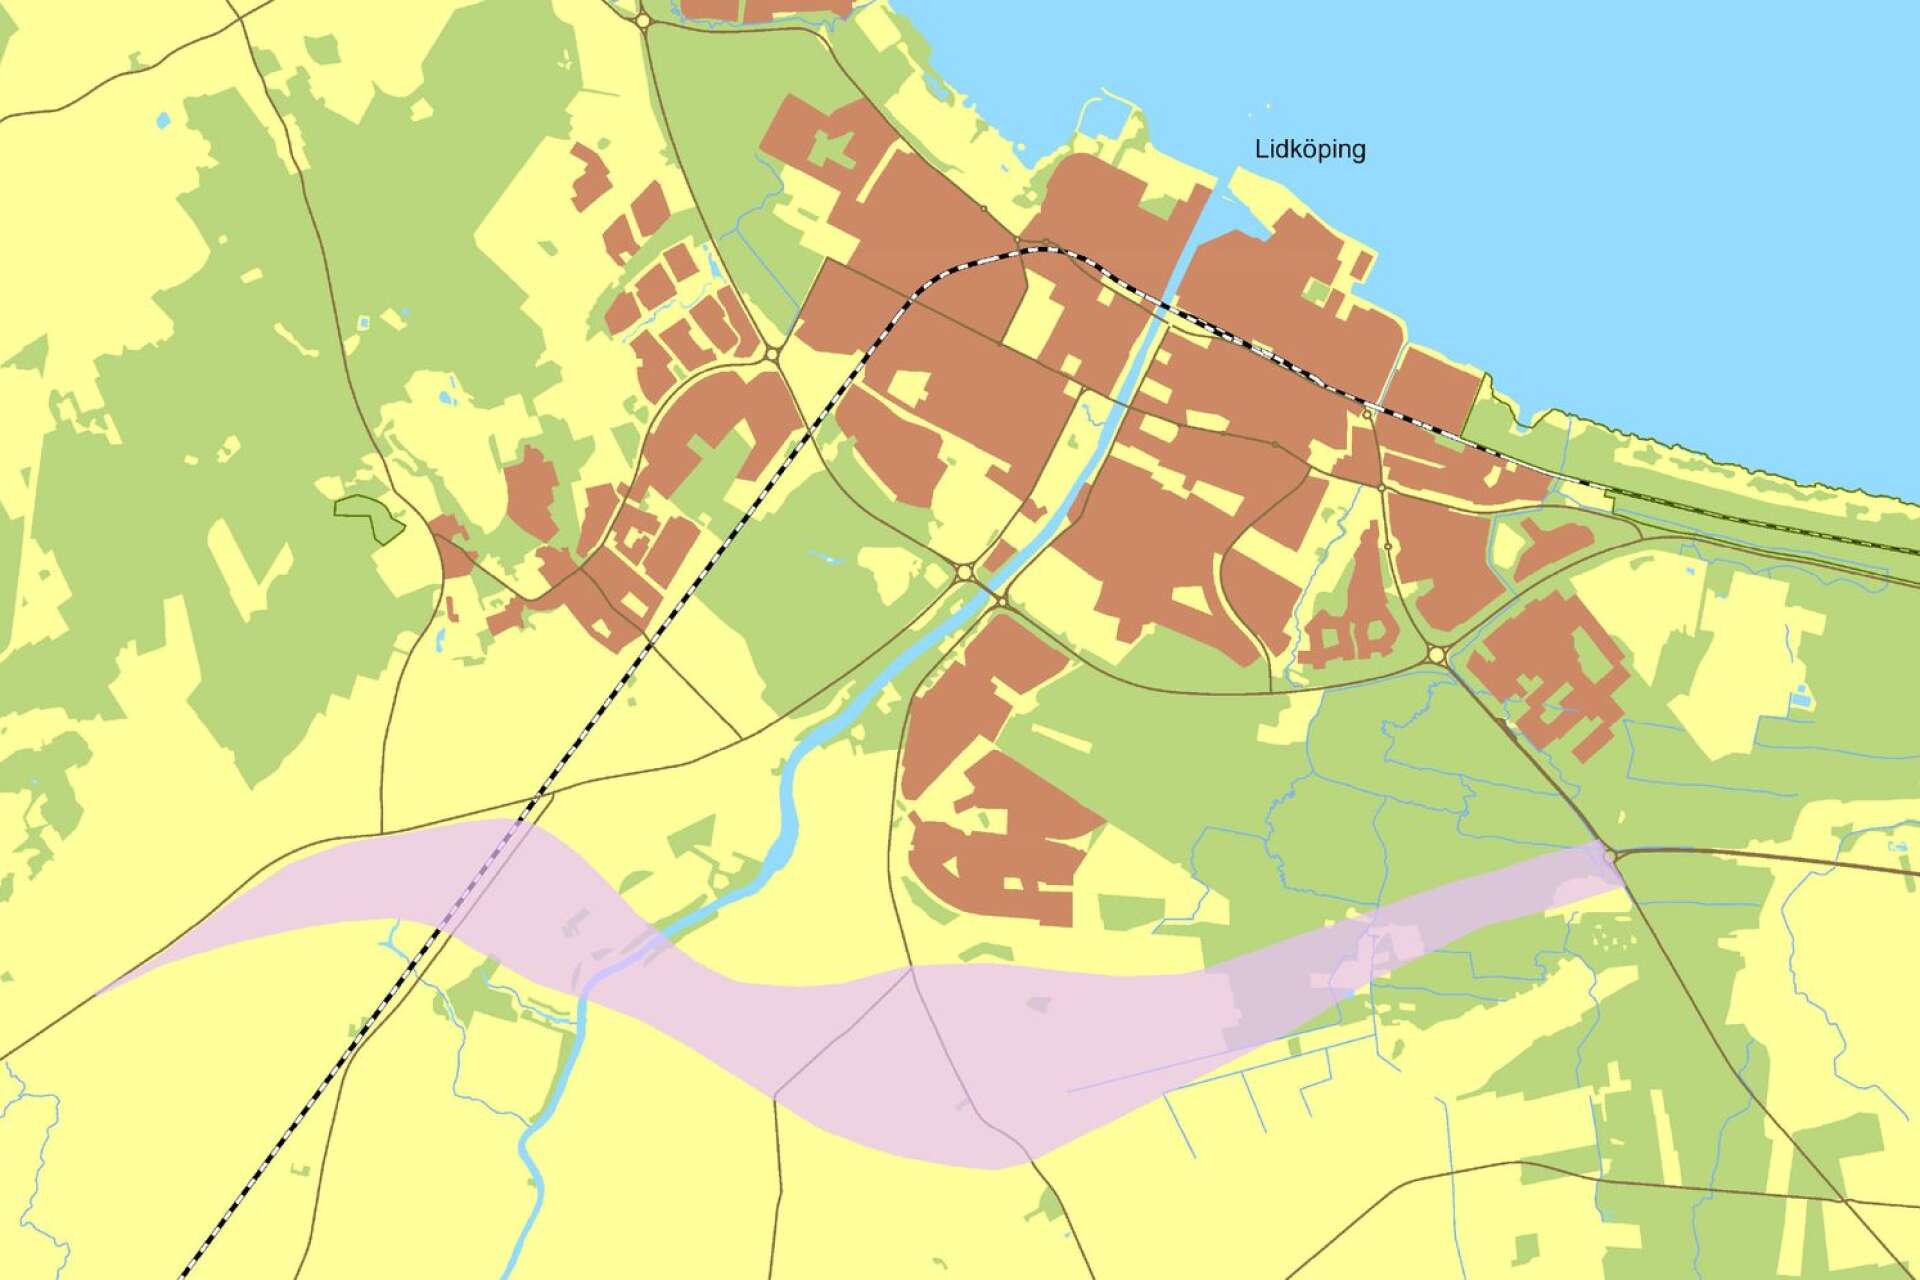 Den aktuella fastigheten ligger i det område där nya 44:an ska dras, det så kallade vägreservatet. På kartan markerat med rosalila färgton.